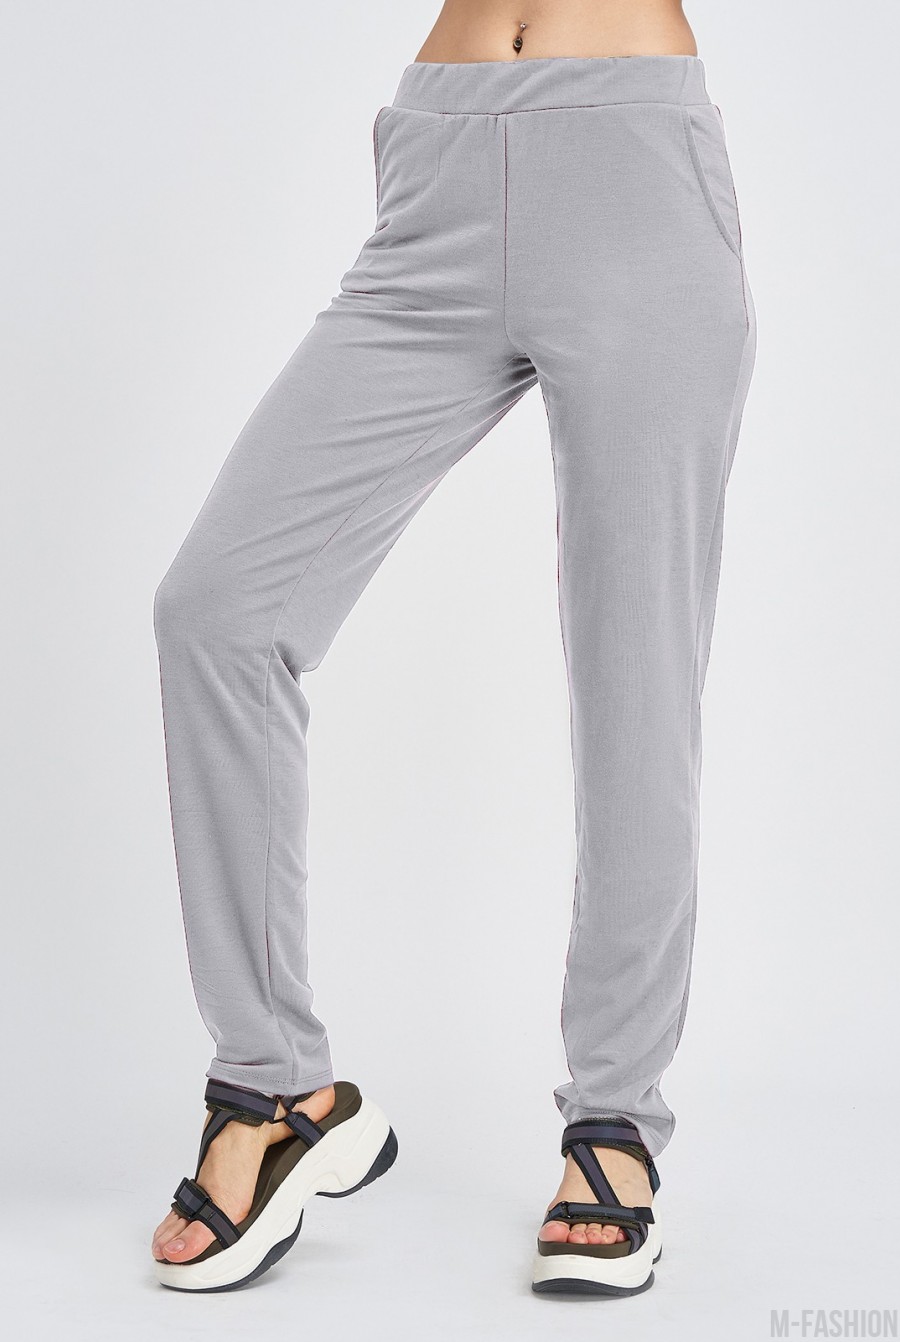 Светло-серые трикотажные штаны с карманами - Фото 1